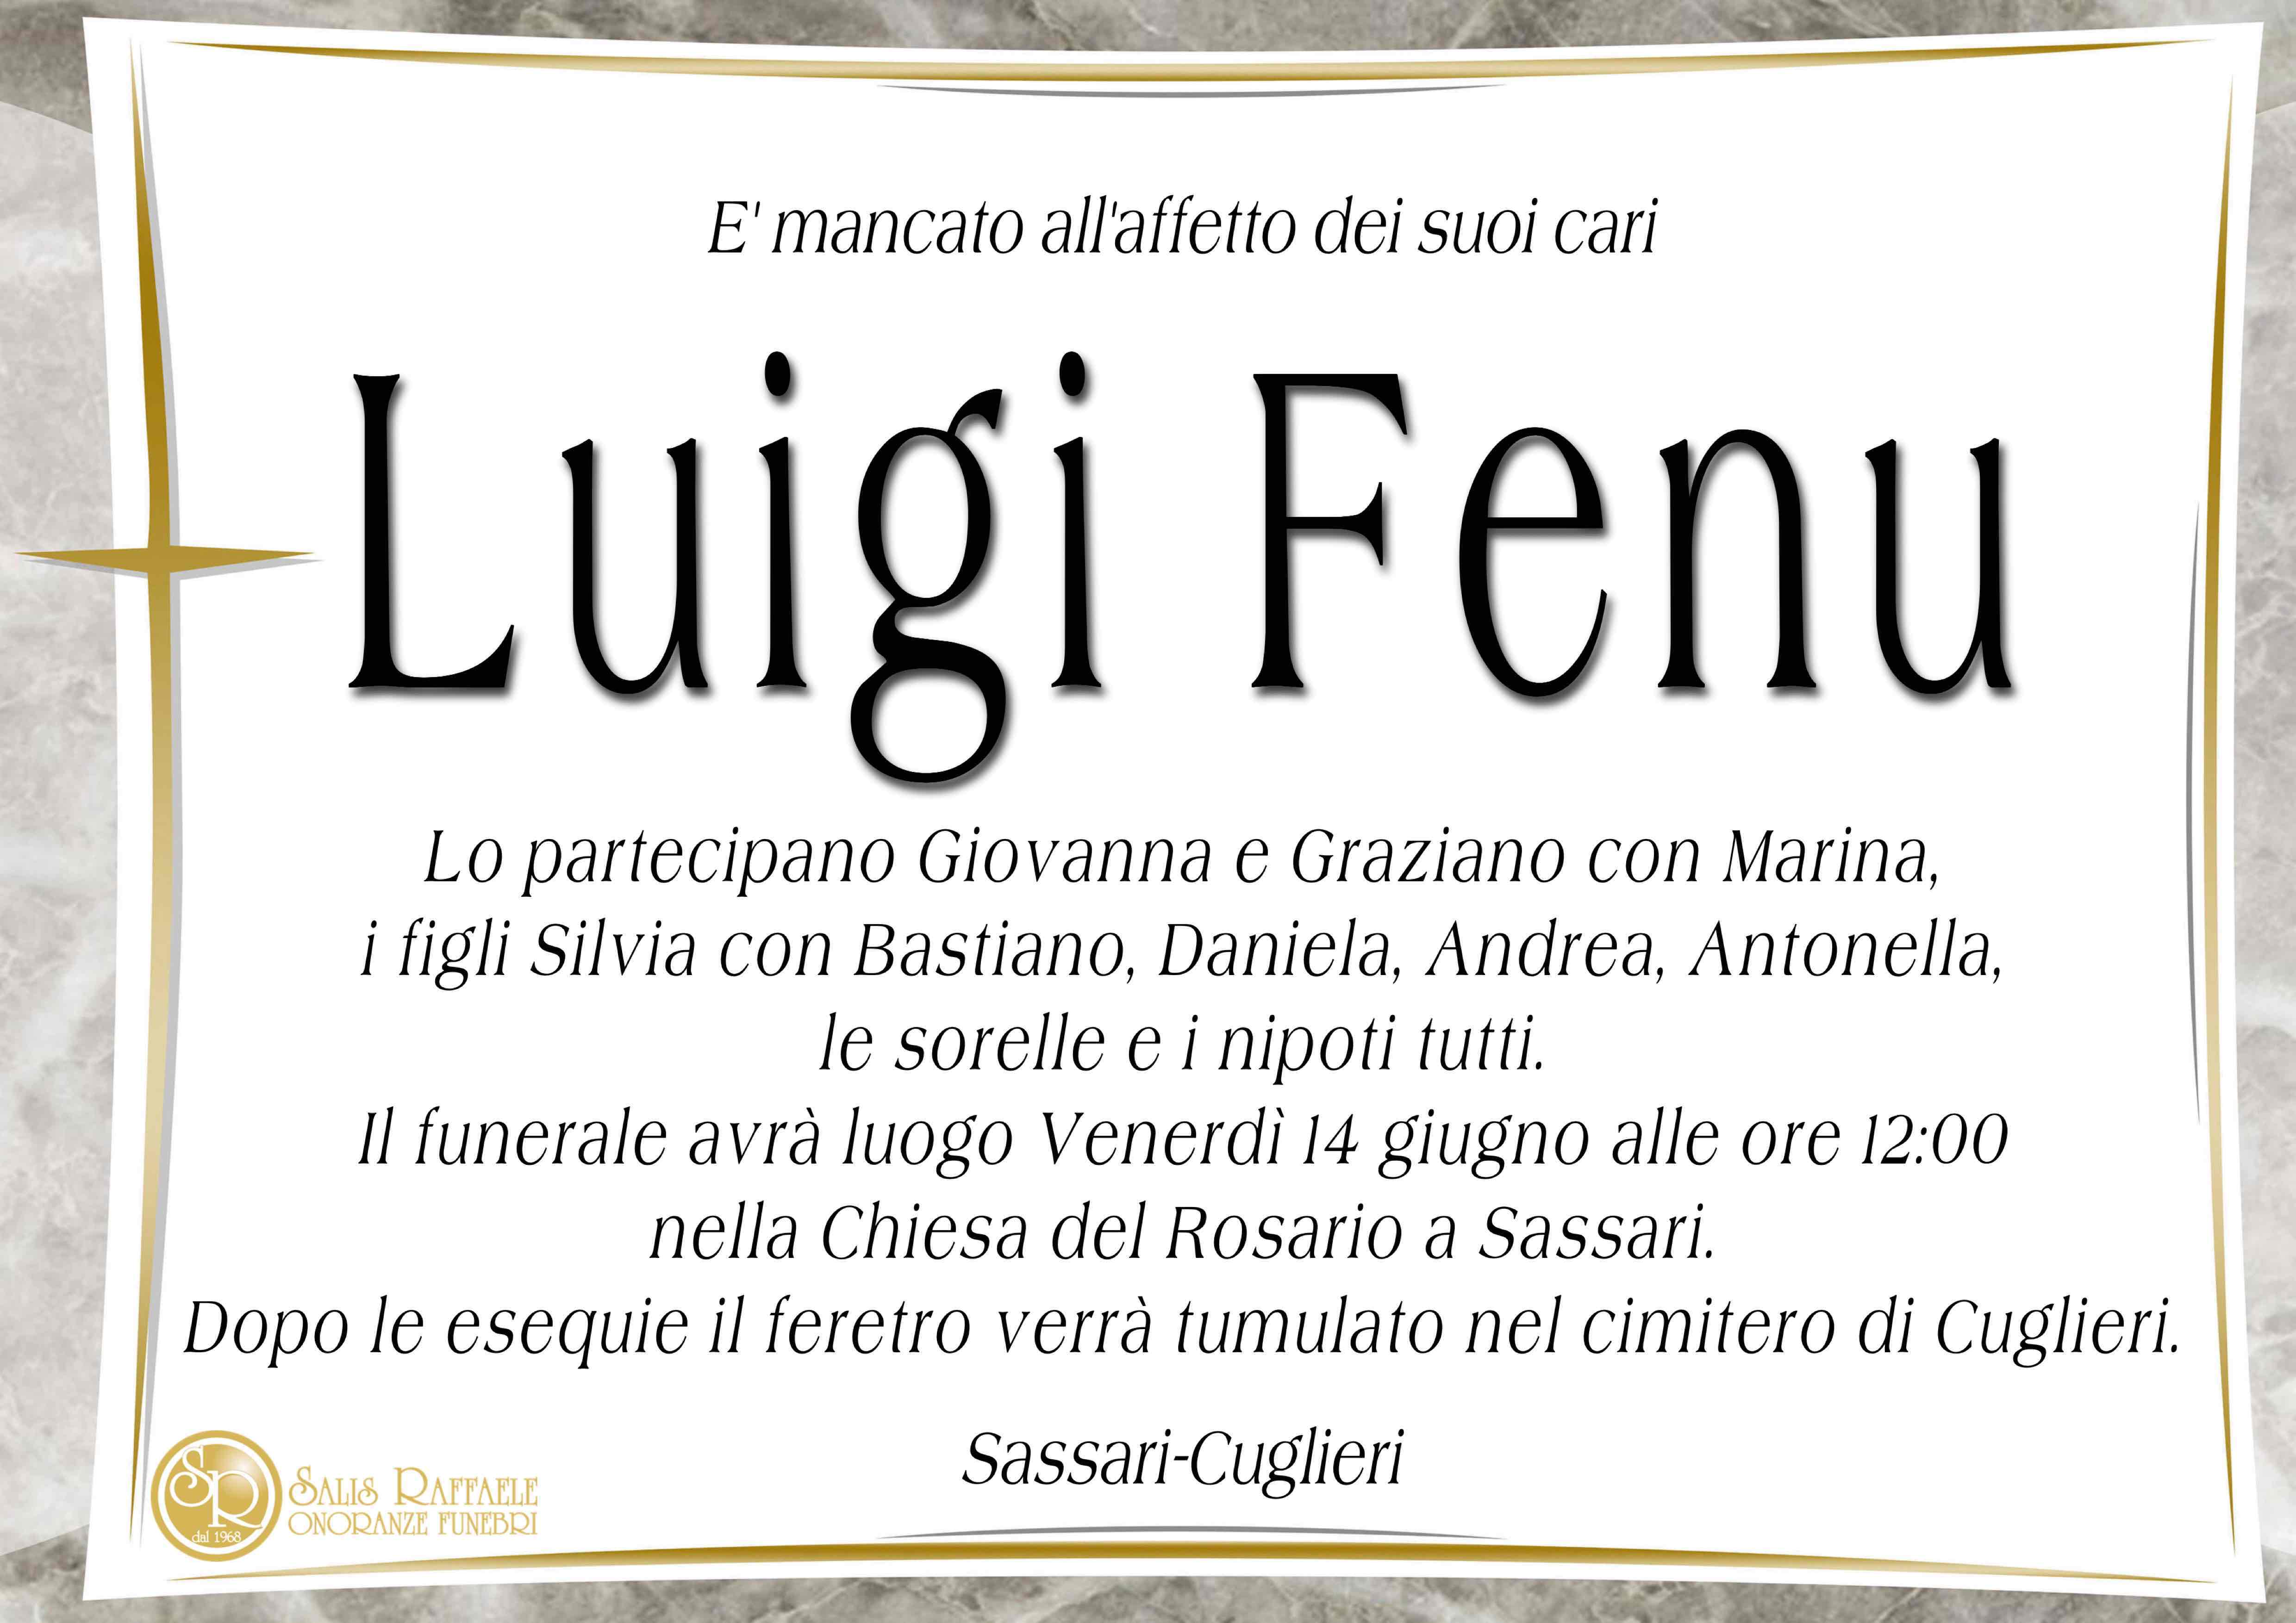 Luigi Fenu